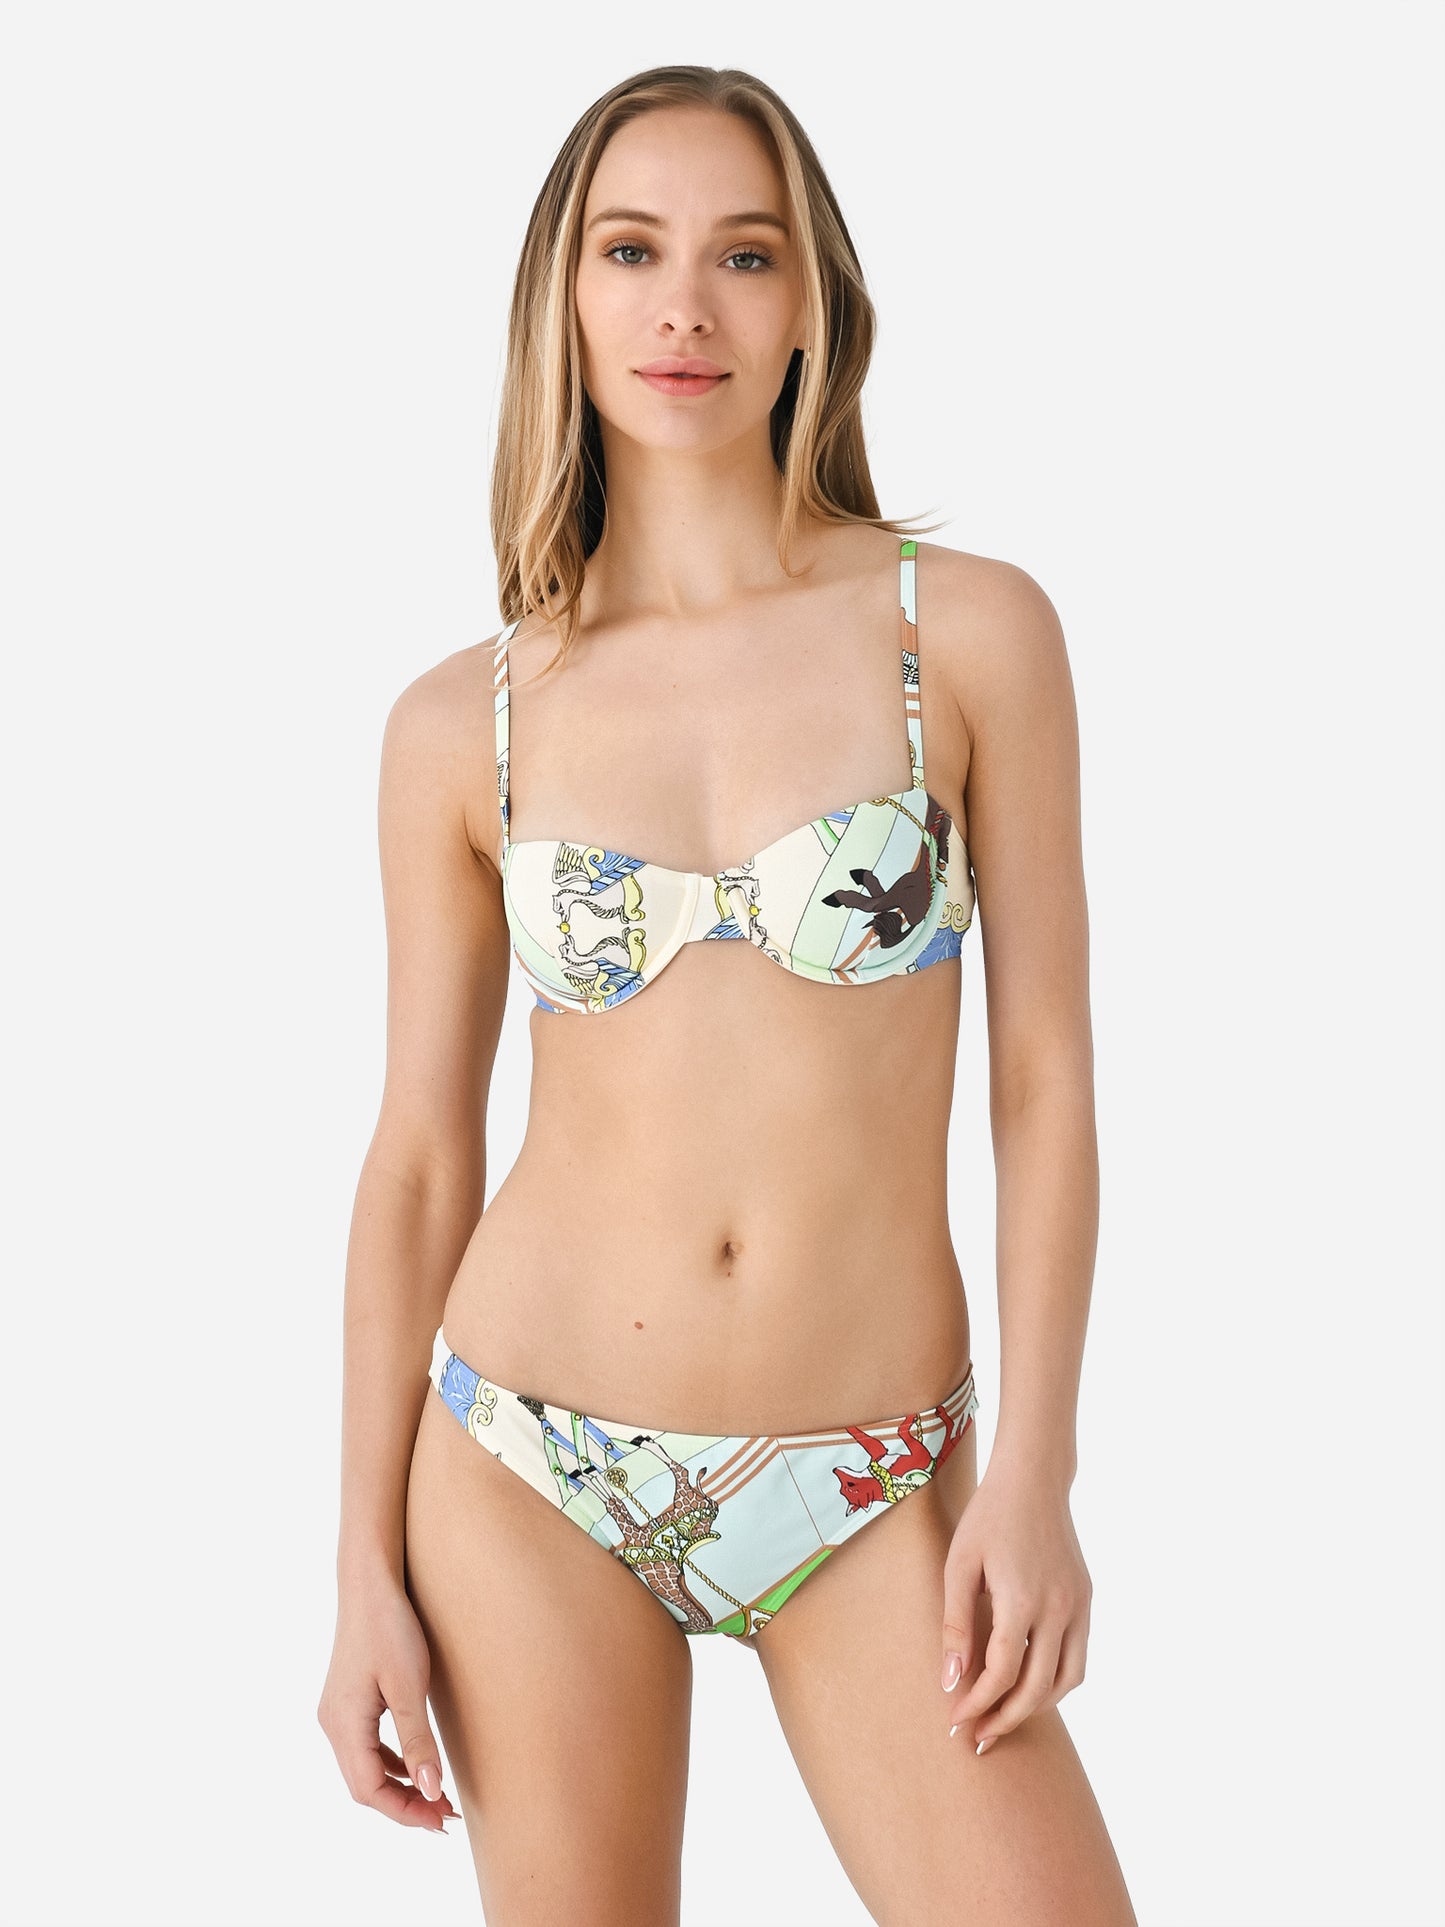 Tory Burch - monogram-print Bikini Top - Women - Nylon/Nylon/Spandex/Elastane/Spandex/Elastane - S - Purple